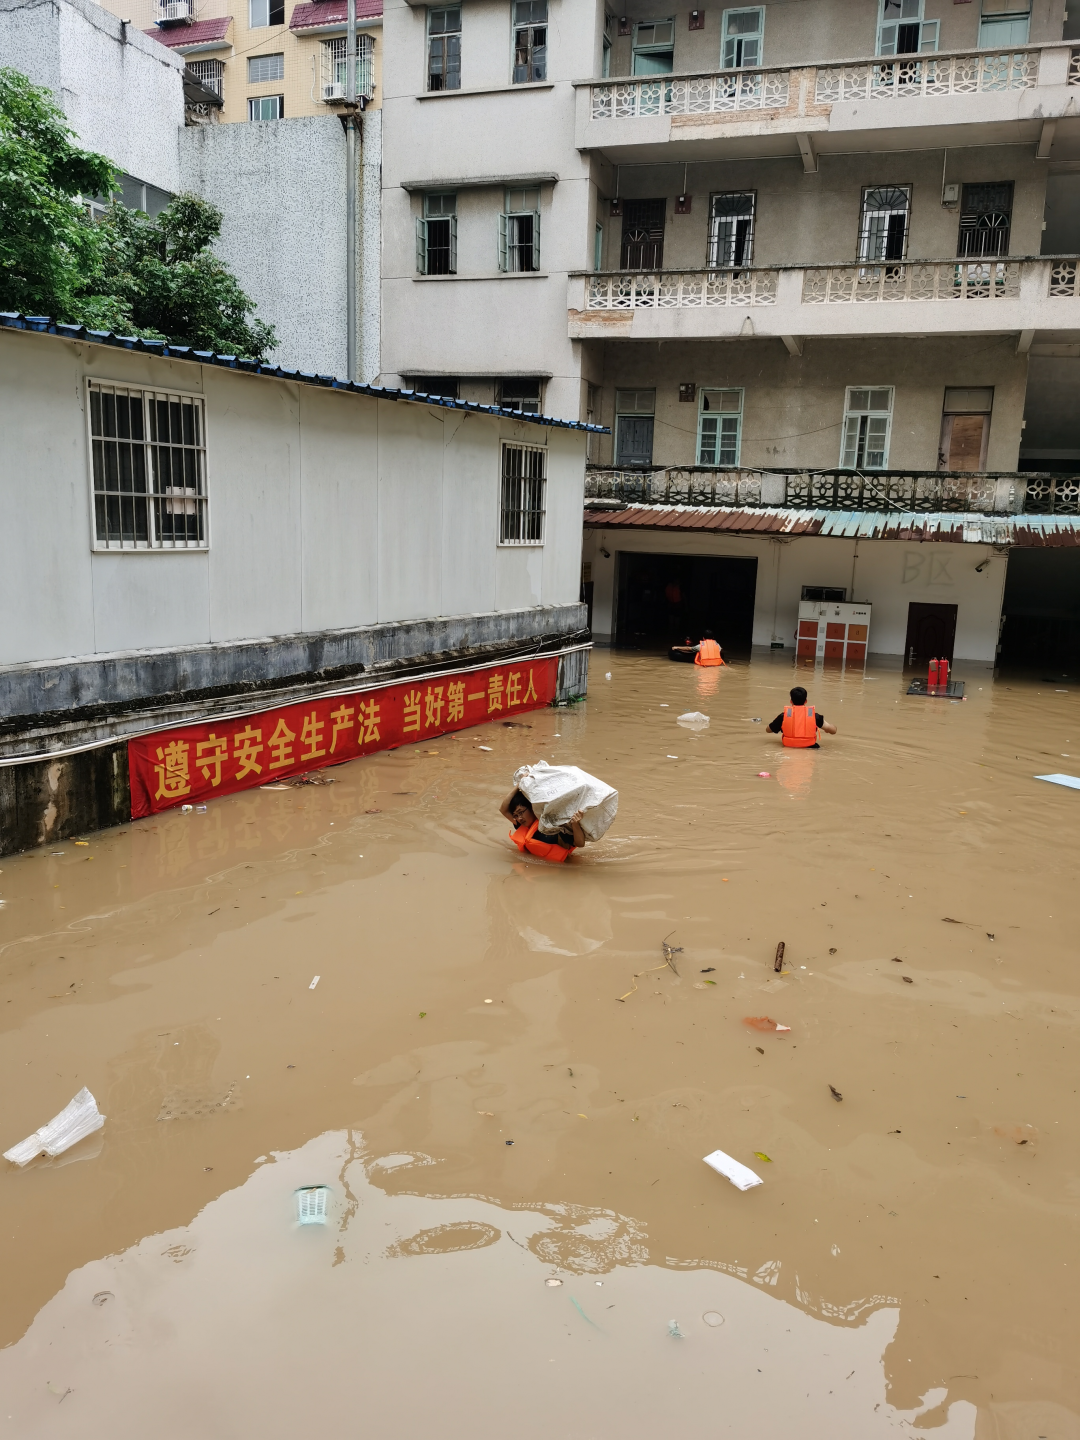 广东持续性暴雨进入第四天 暴雨黄色预警继续发布-中国气象局政府门户网站